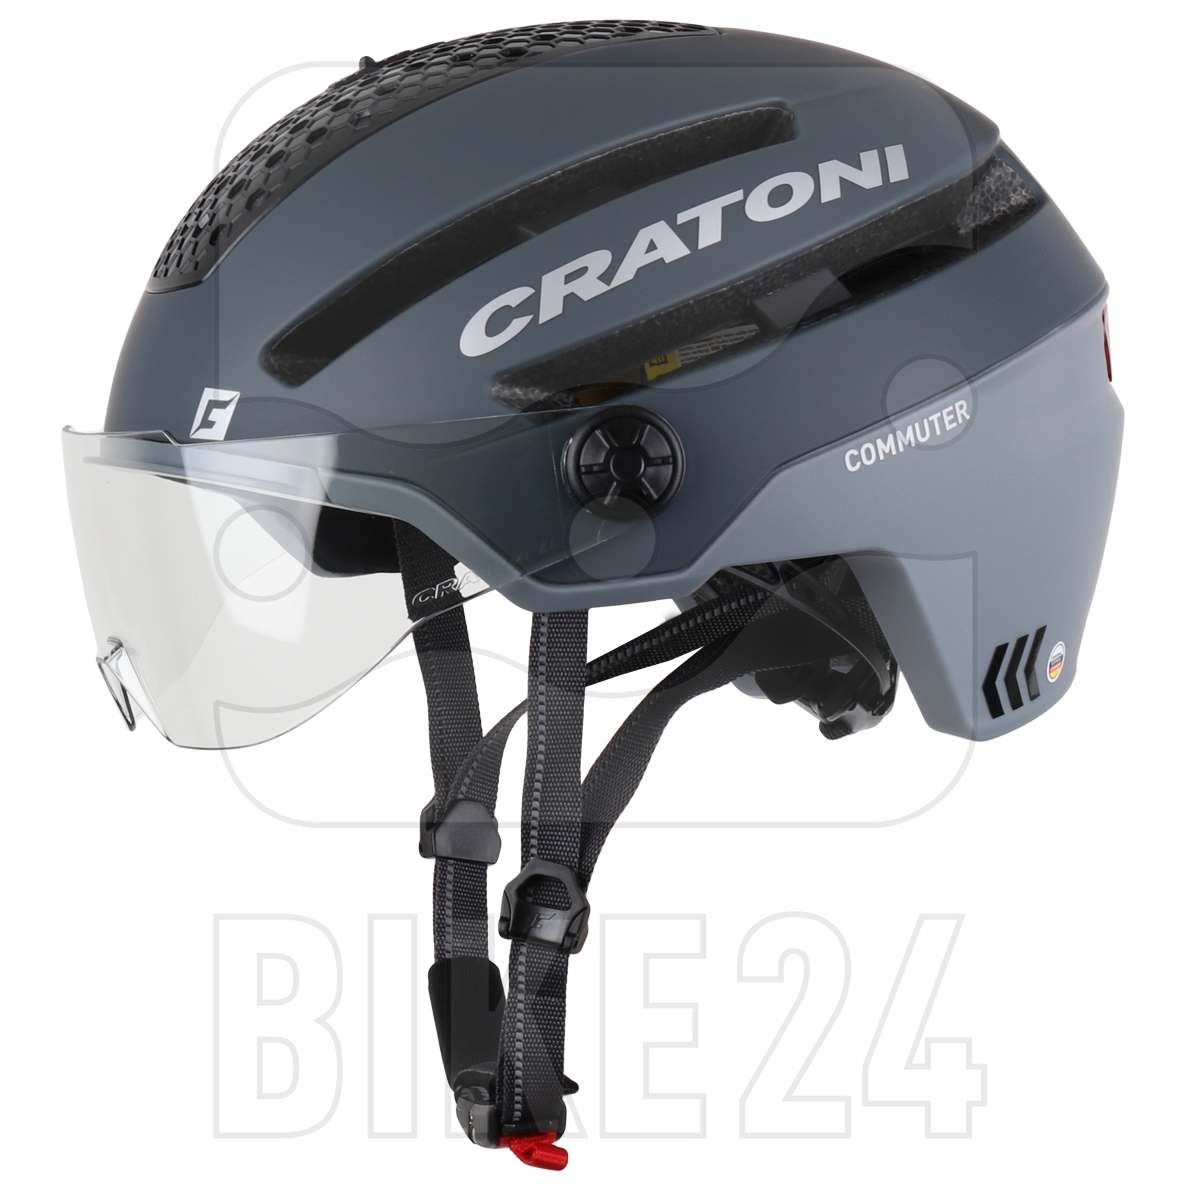 Produktbild von CRATONI Commuter Helm - grey matt